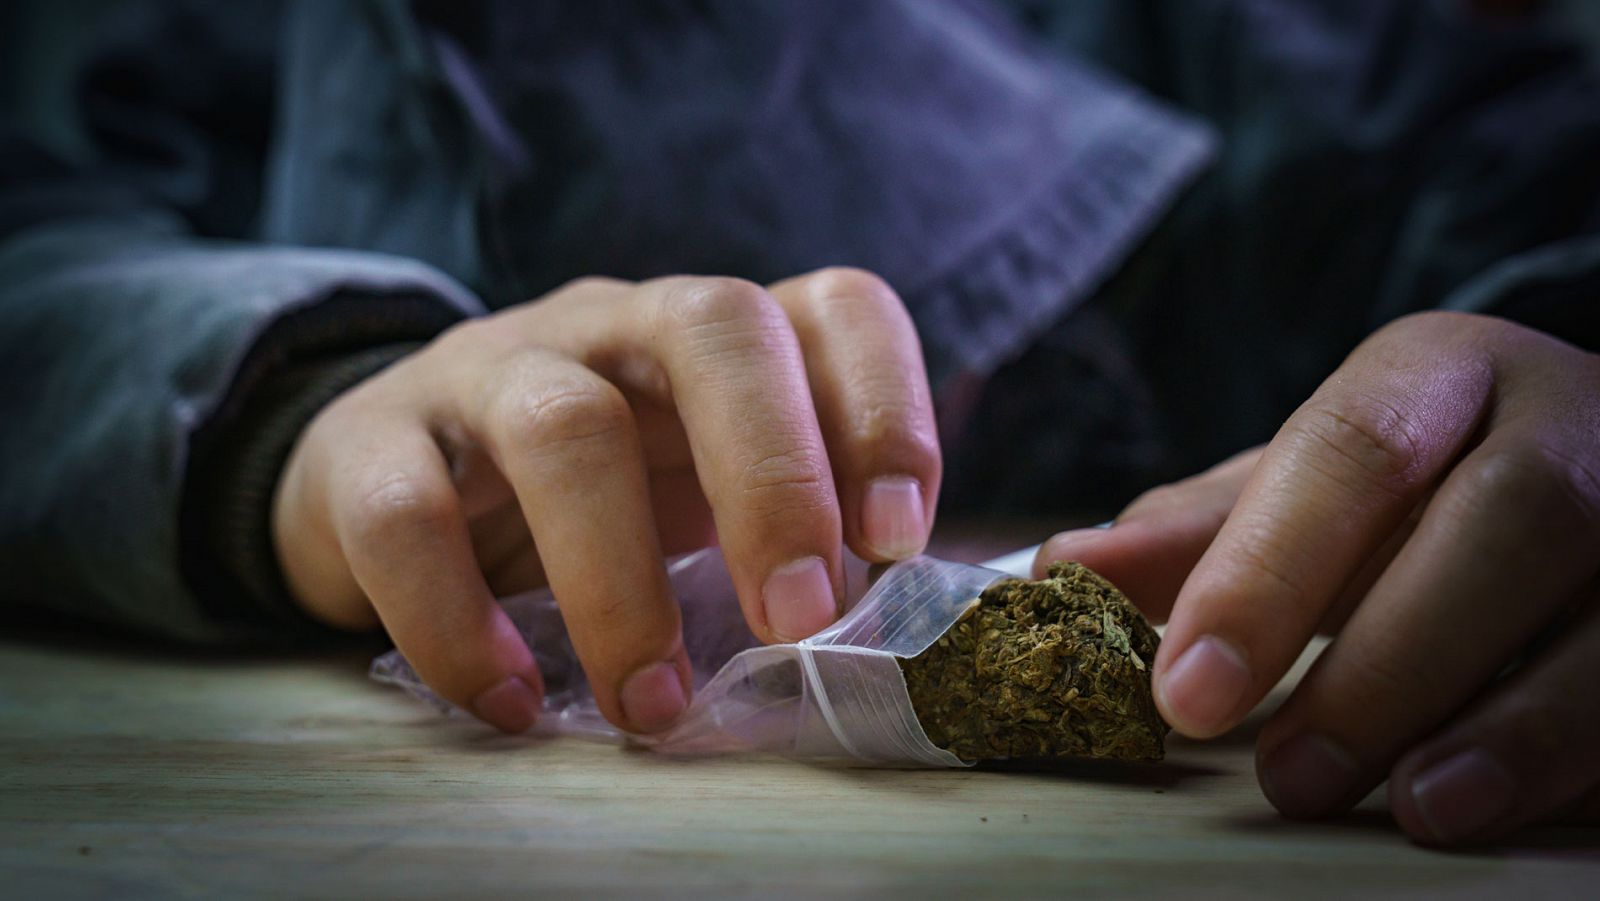 Los psiquiatras advierten: consumir mucha marihuana en poco tiempo puede provocar daños cerebrales de por vida